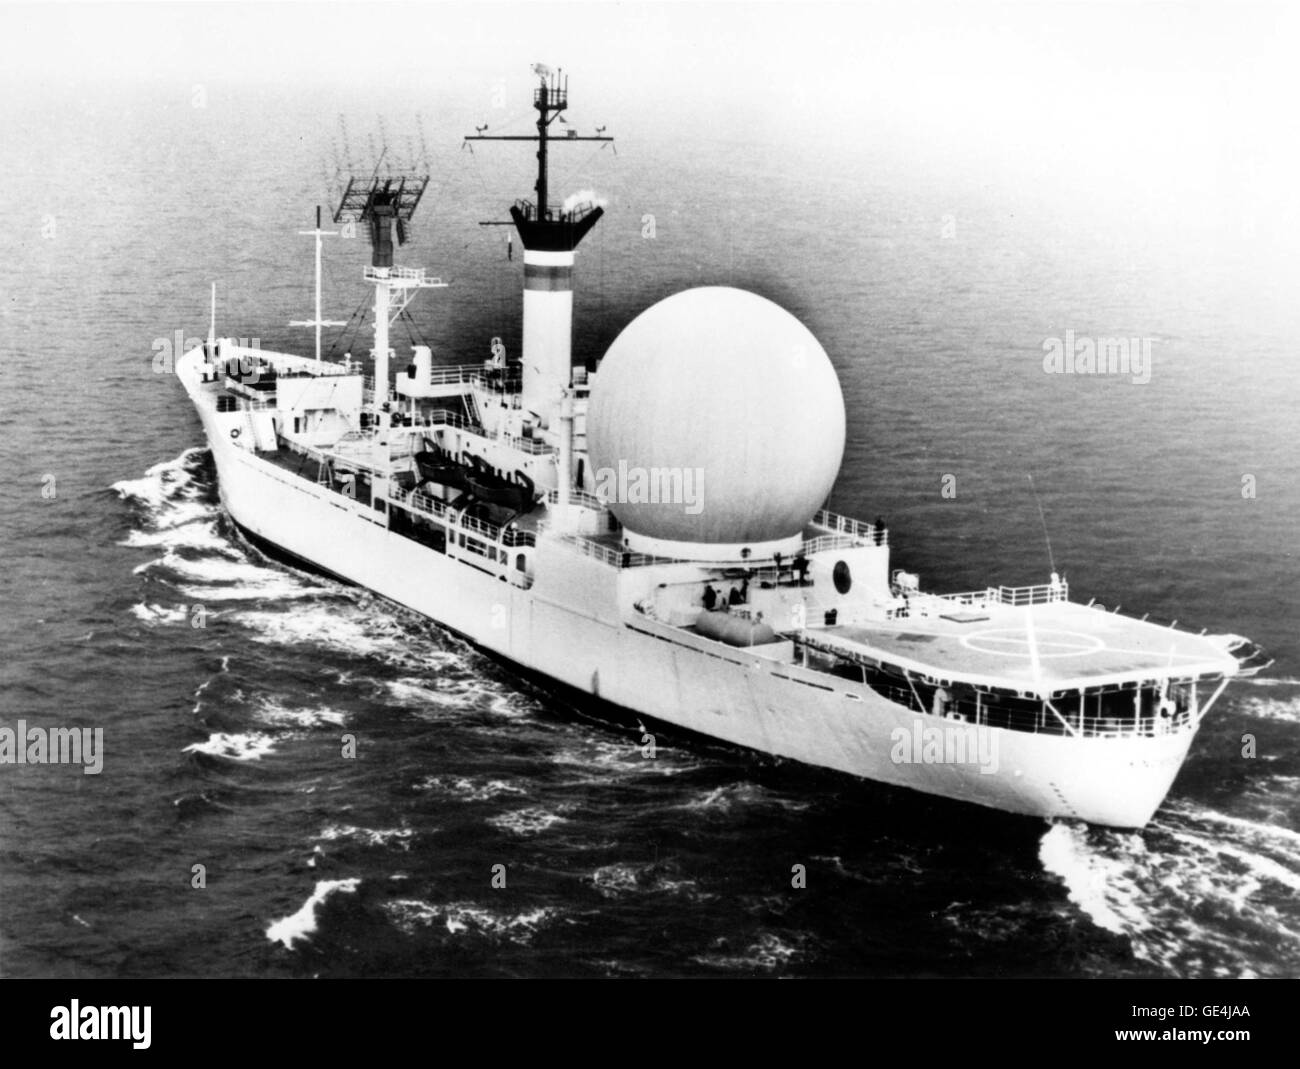 Im Jahre 1962 baute der United States Navy das erste Schiff der Satelliten-Kommunikation, U.S.N.S. Kingsport. Das Bild zeigt ein 53-Fuß weiße Kunststoffhaube schützen eine 30-Fuß stabilisierte Parabolantenne. Dieses Schiff war eine Oberfläche ansässigen Sender für Tracking und Kommunikation für NASA Projekt Syncom. Projekt Syncom Ziel war es, die Technologie für sonnensynchrone Umlaufbahn Kommunikationssatelliten zu demonstrieren. Die ersten Syncom startete am 14. Februar 1963.  Bild Nr.: 63-SYNCOM-8 Datum: 29. Januar 1963 Stockfoto